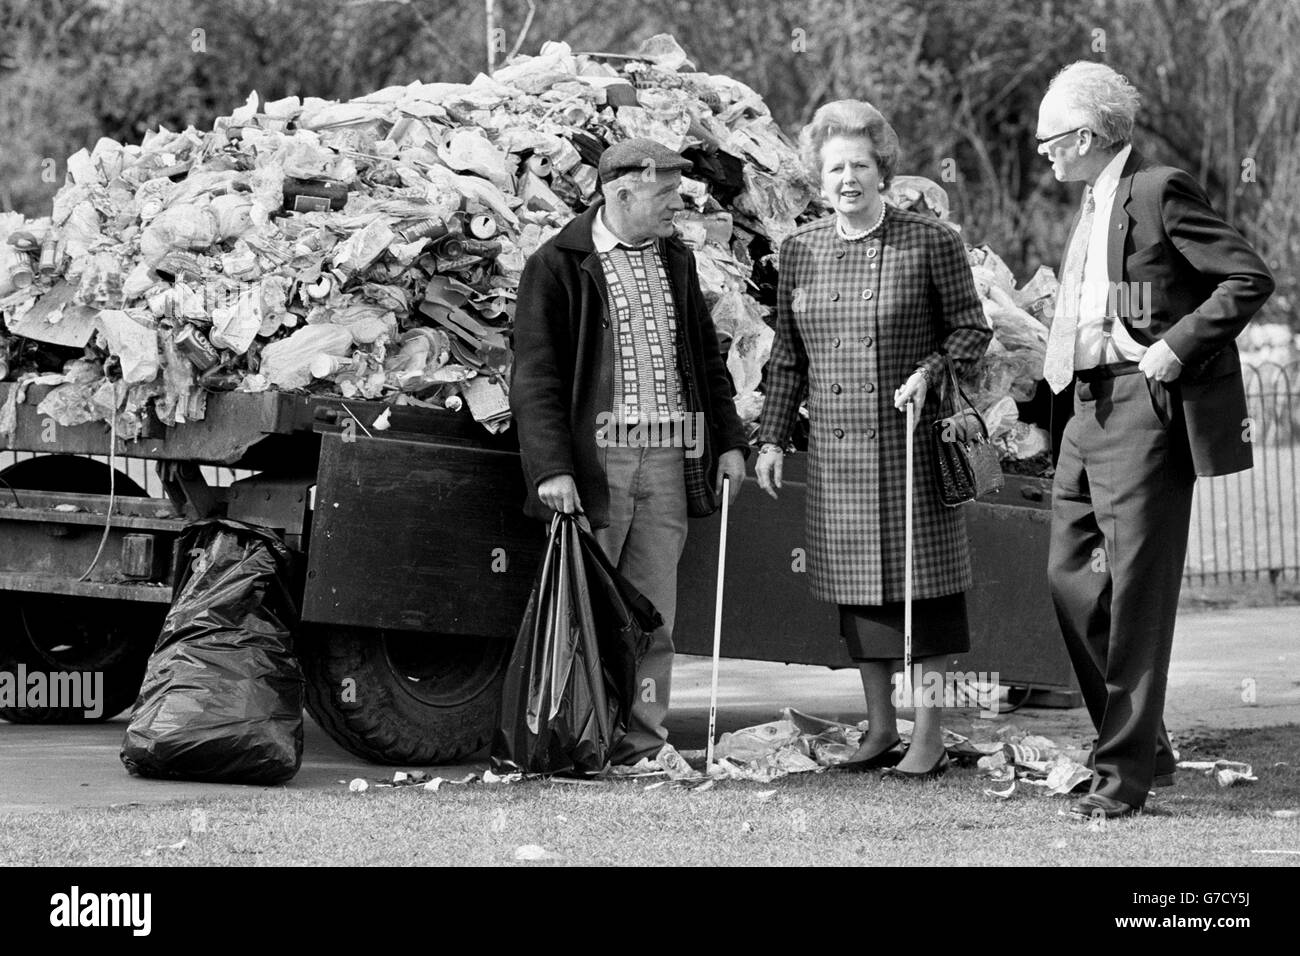 Premierministerin Margaret Thatcher mit Umweltminister Nicholas Ridley und Gärtner Daniel Kelly (58) und einem Müllhaufen im St. James's Park, London, beim Start einer neuen, von der Regierung unterstützten Anti-Müll-Kampagne, die von der Tidy Britain Group betrieben wird. Stockfoto